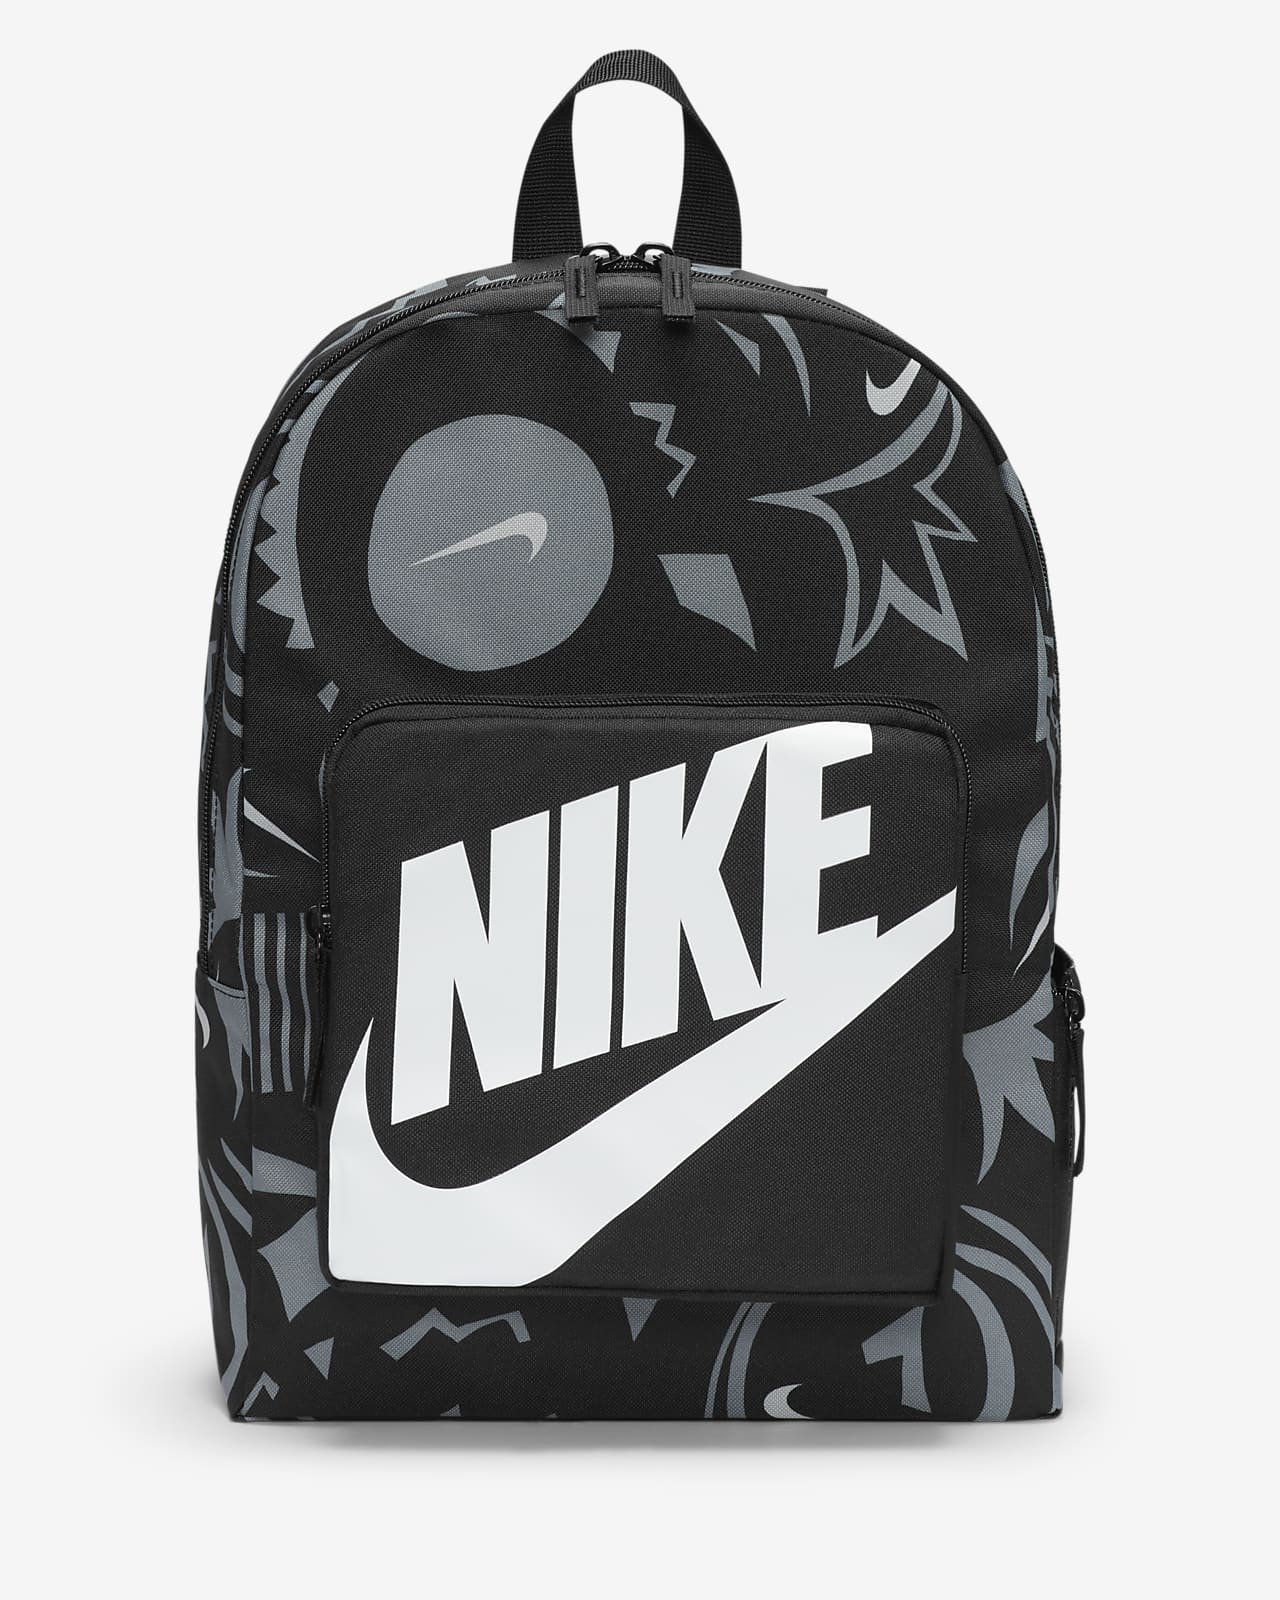 dannelse Mundtlig Ond Nike Classic-rygsæk til børn (16 l). Nike DK